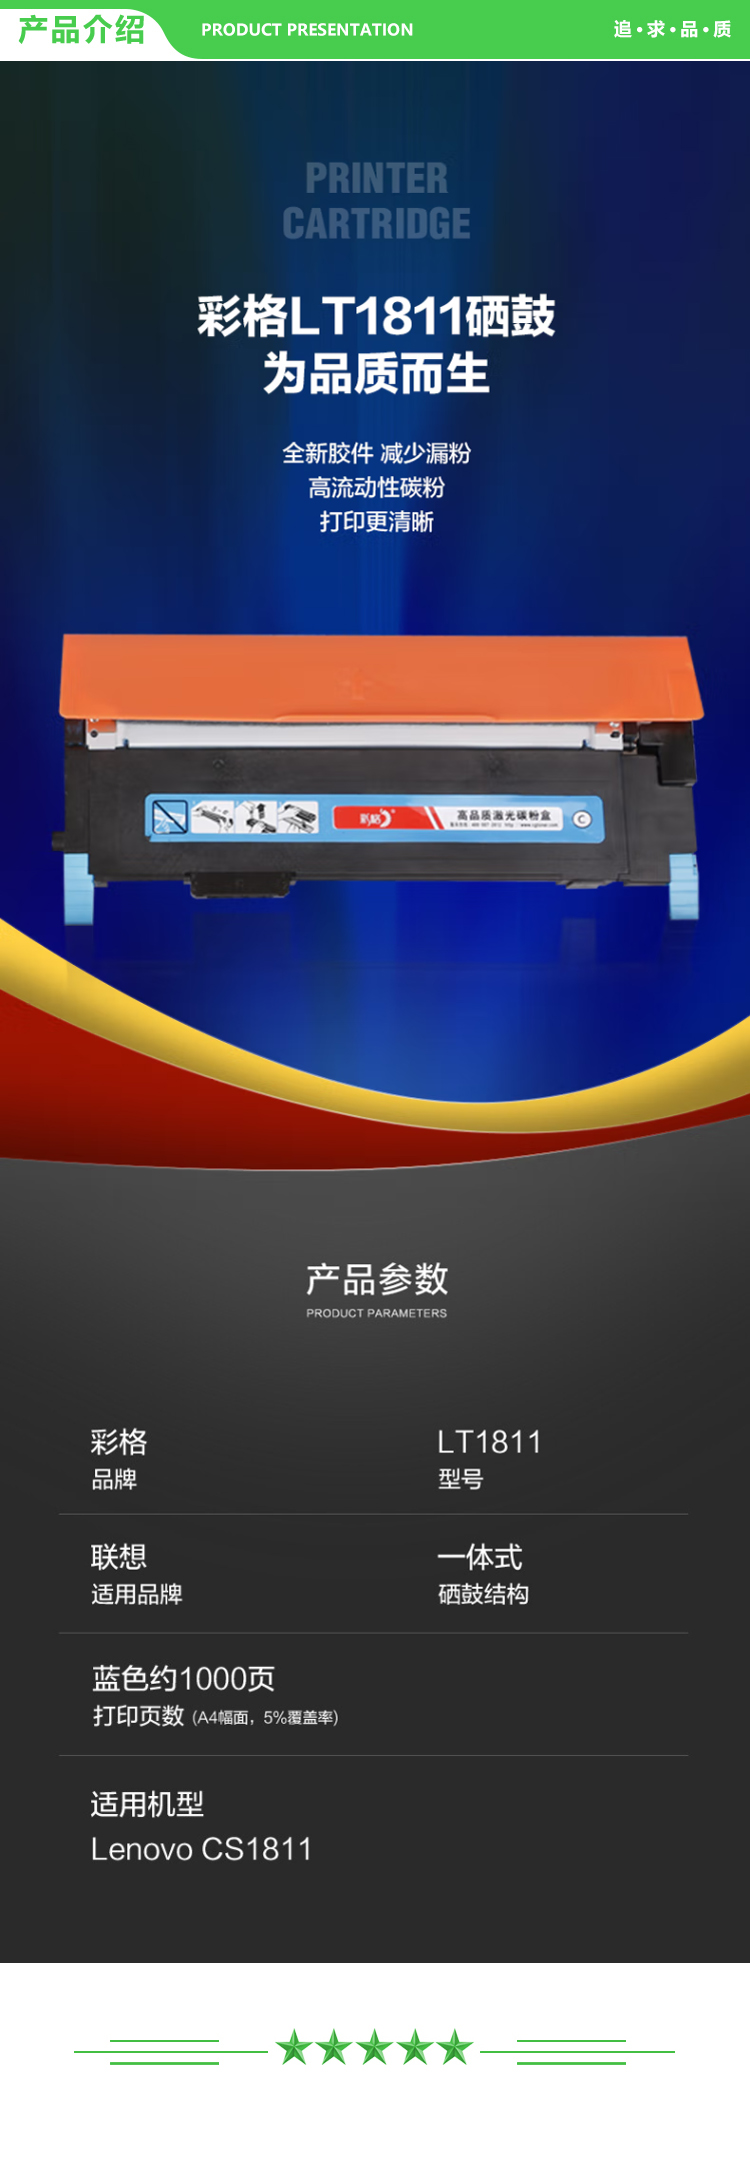 彩格 LT181 粉盒蓝色-带芯片 1000页 适用联想CS1811粉盒 LT1811墨盒 LT181k激光打印机硒鼓复印一体碳粉盒.jpg